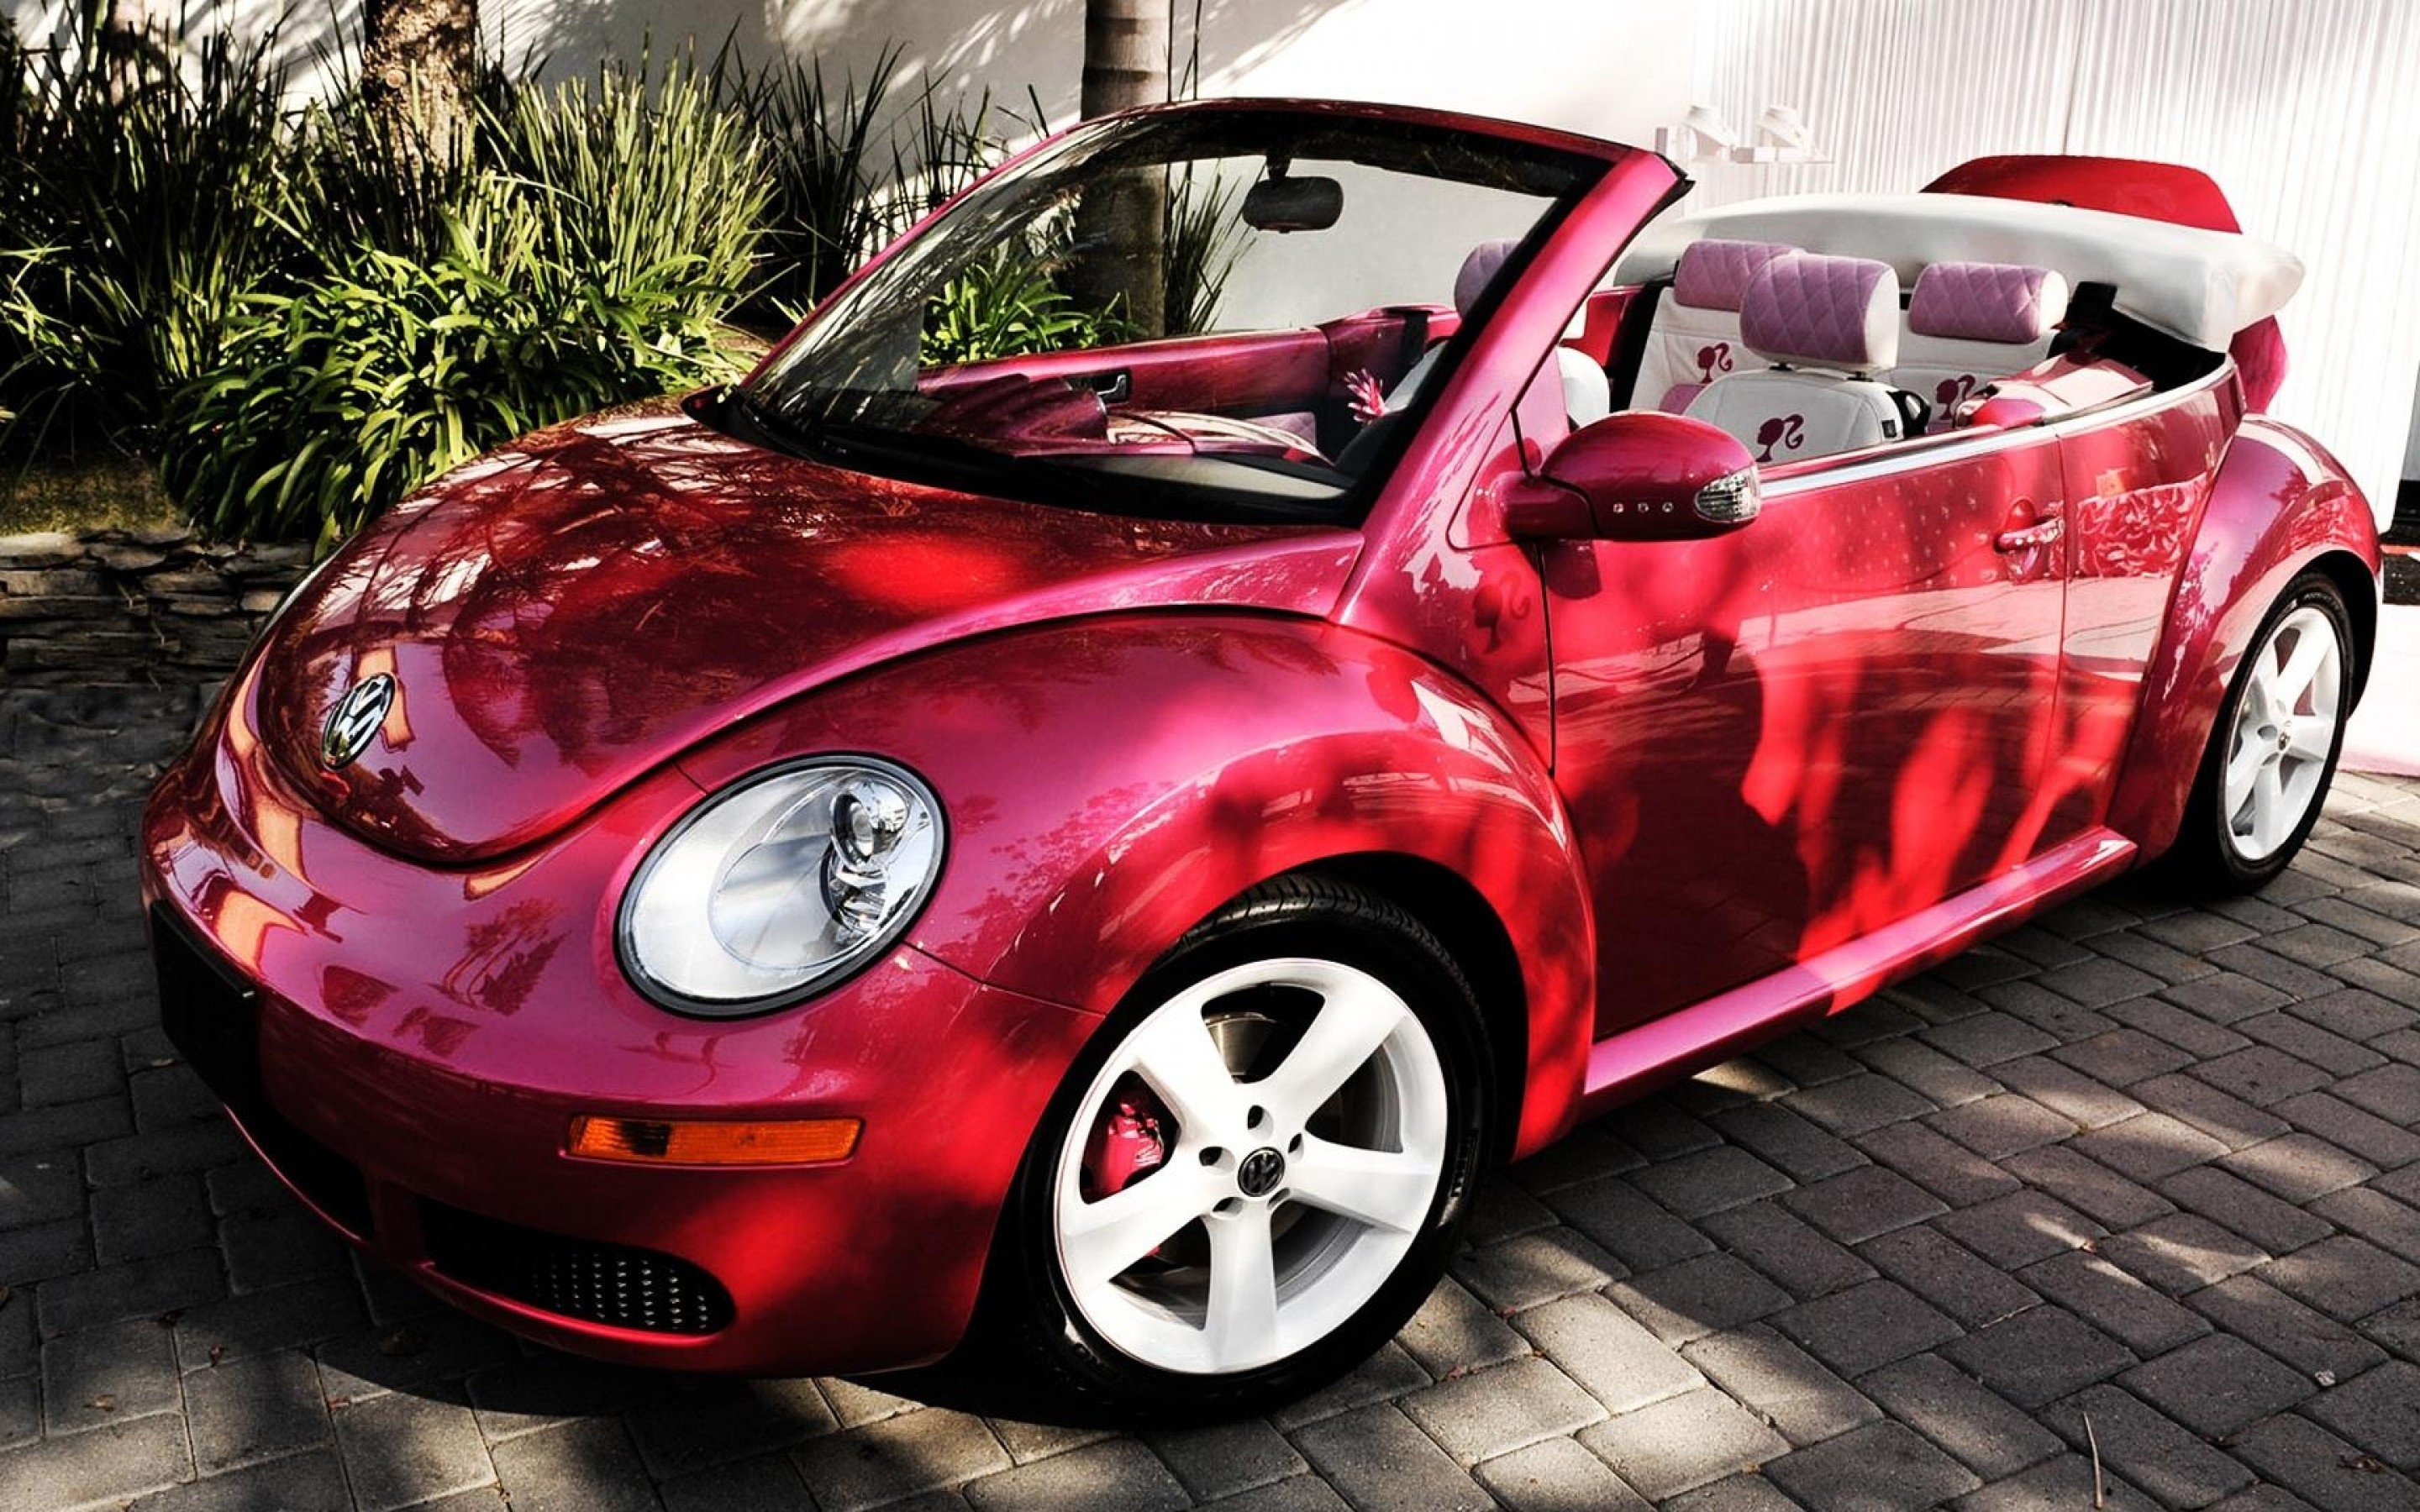 Best Volkswagen Beetle wallpaper ID:117151 for High Resolution hd 2880x1800 desktop